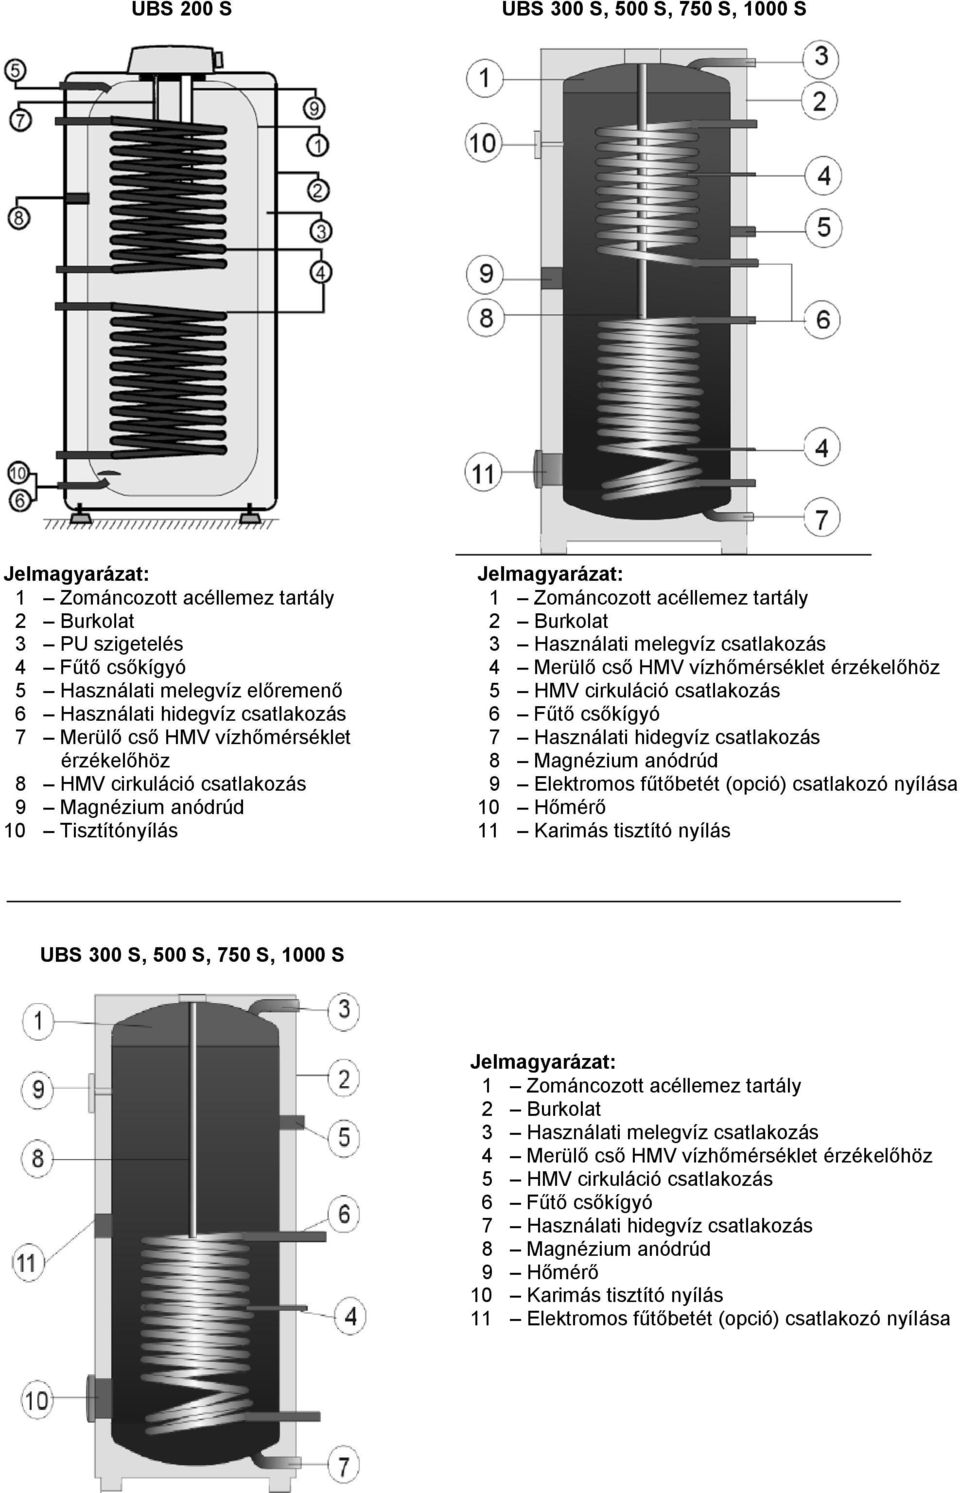 Merülő cső HMV vízhőmérséklet érzékelőhöz 5 HMV cirkuláció csatlakozás 6 Fűtő csőkígyó 7 Használati hidegvíz csatlakozás 8 Magnézium anódrúd 9 Elektromos fűtőbetét (opció) csatlakozó nyílása 10